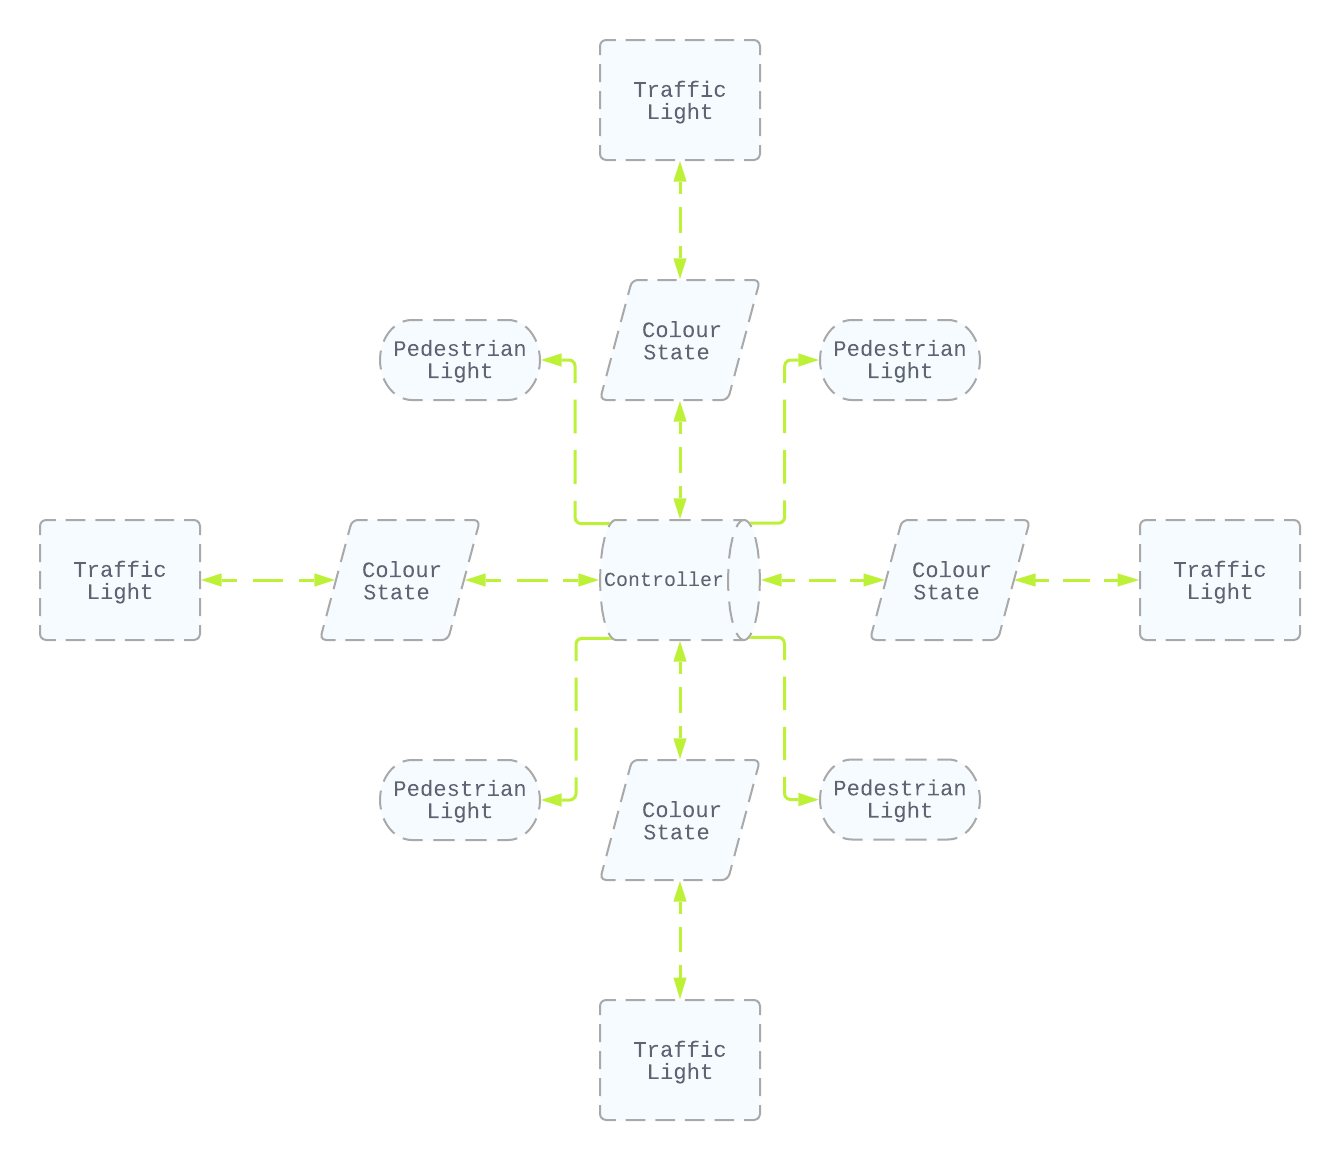 System Diagram explaining component
archtecture